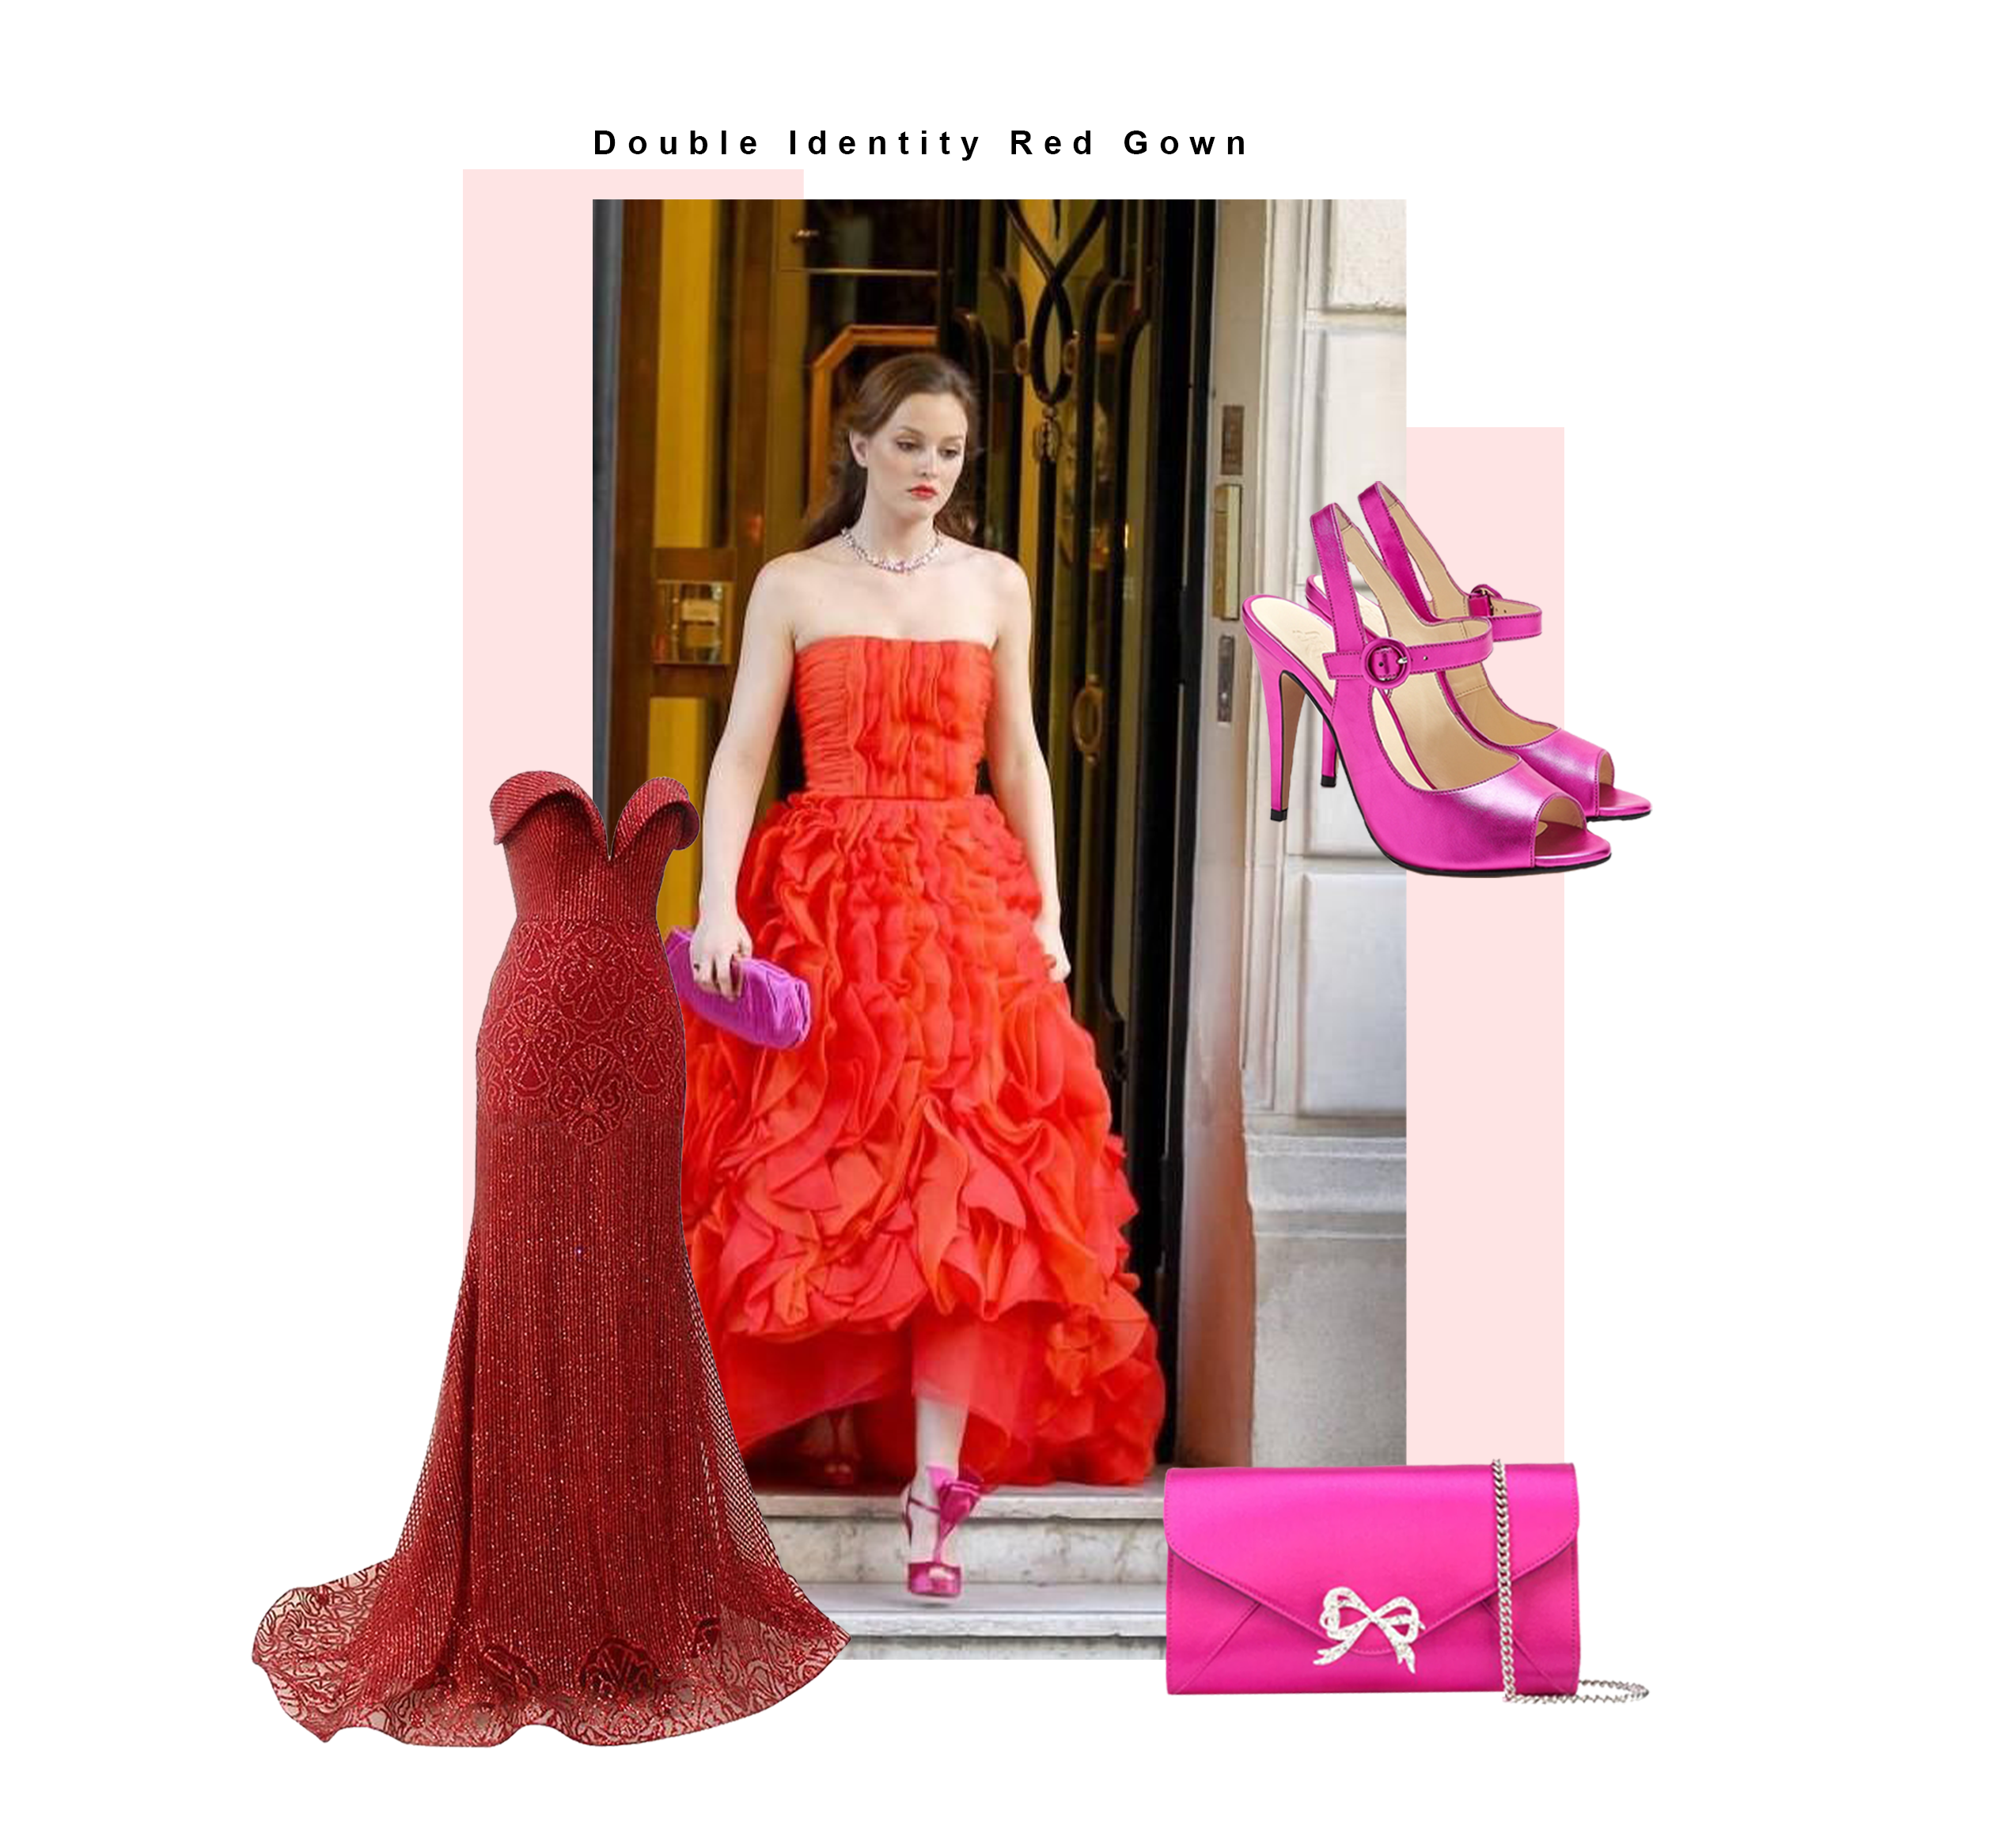 Blair Waldorf trägt in Staffel 4 ein rotes Kleid für ihren Prinzen